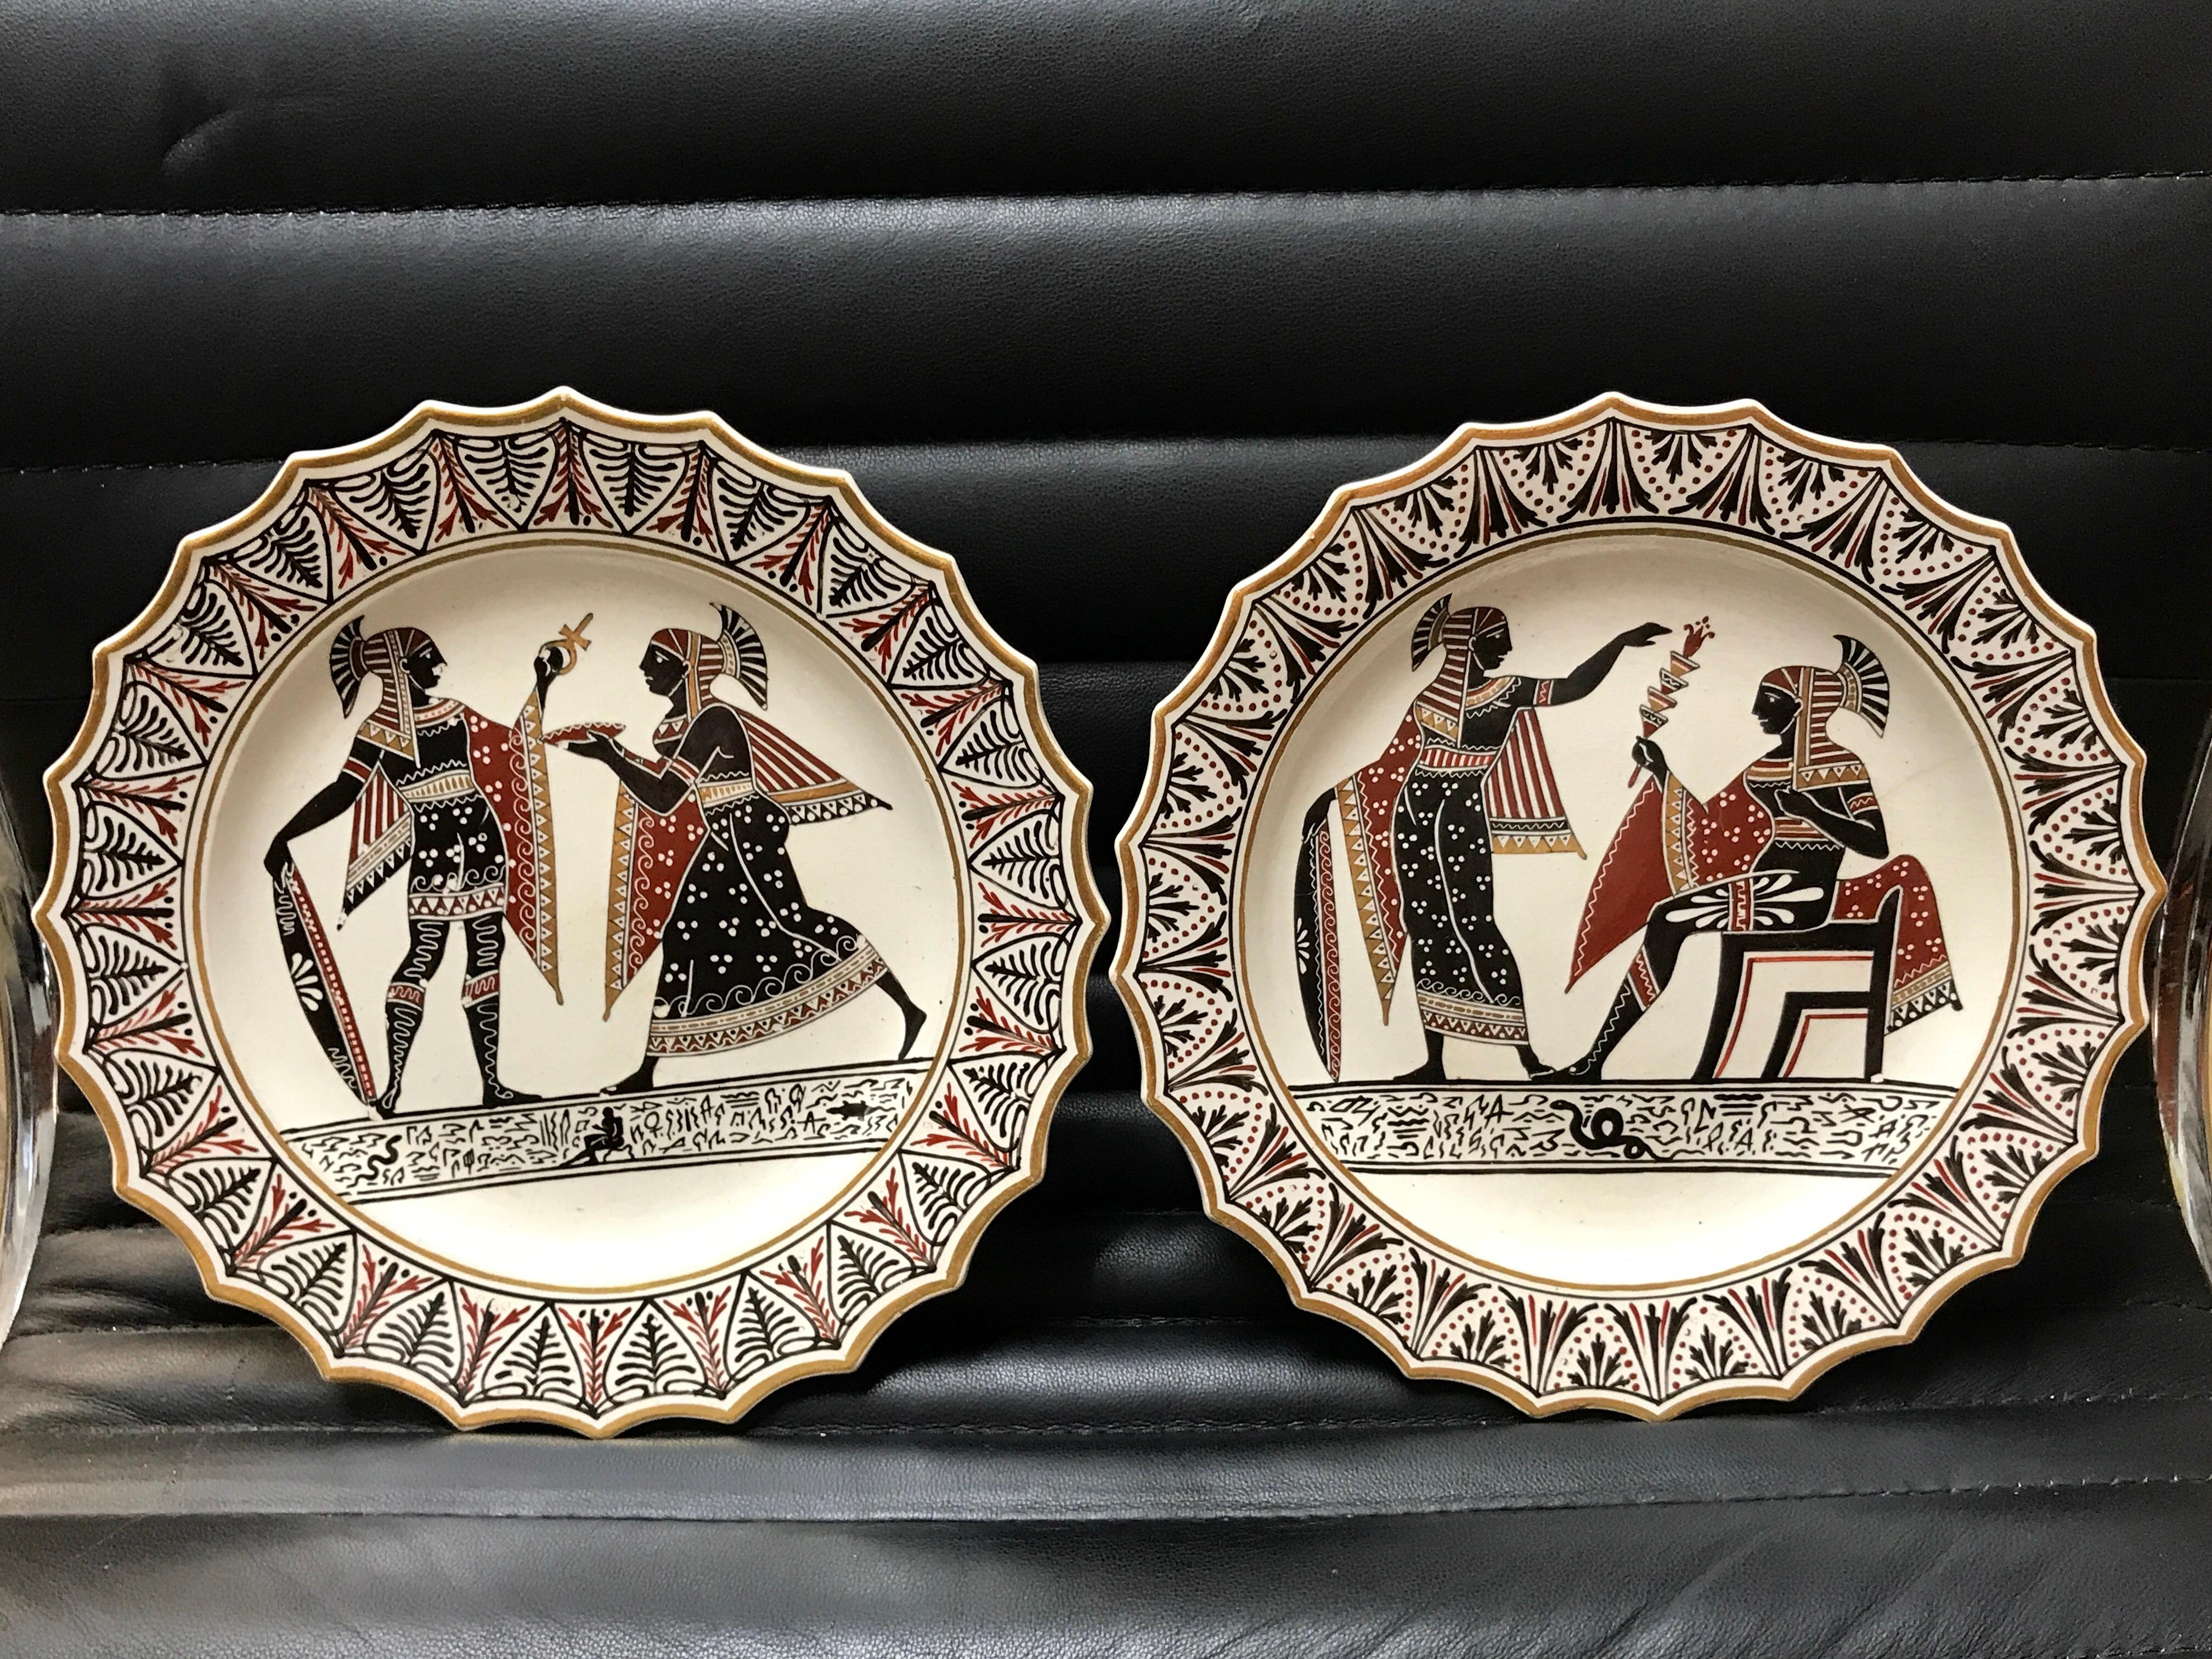 Paire d'assiettes en poterie Giustiniani Egyptomania avec bordures dorées
19e siècle, impressionné par l'écriture Giustiniani et d'autres caractères.